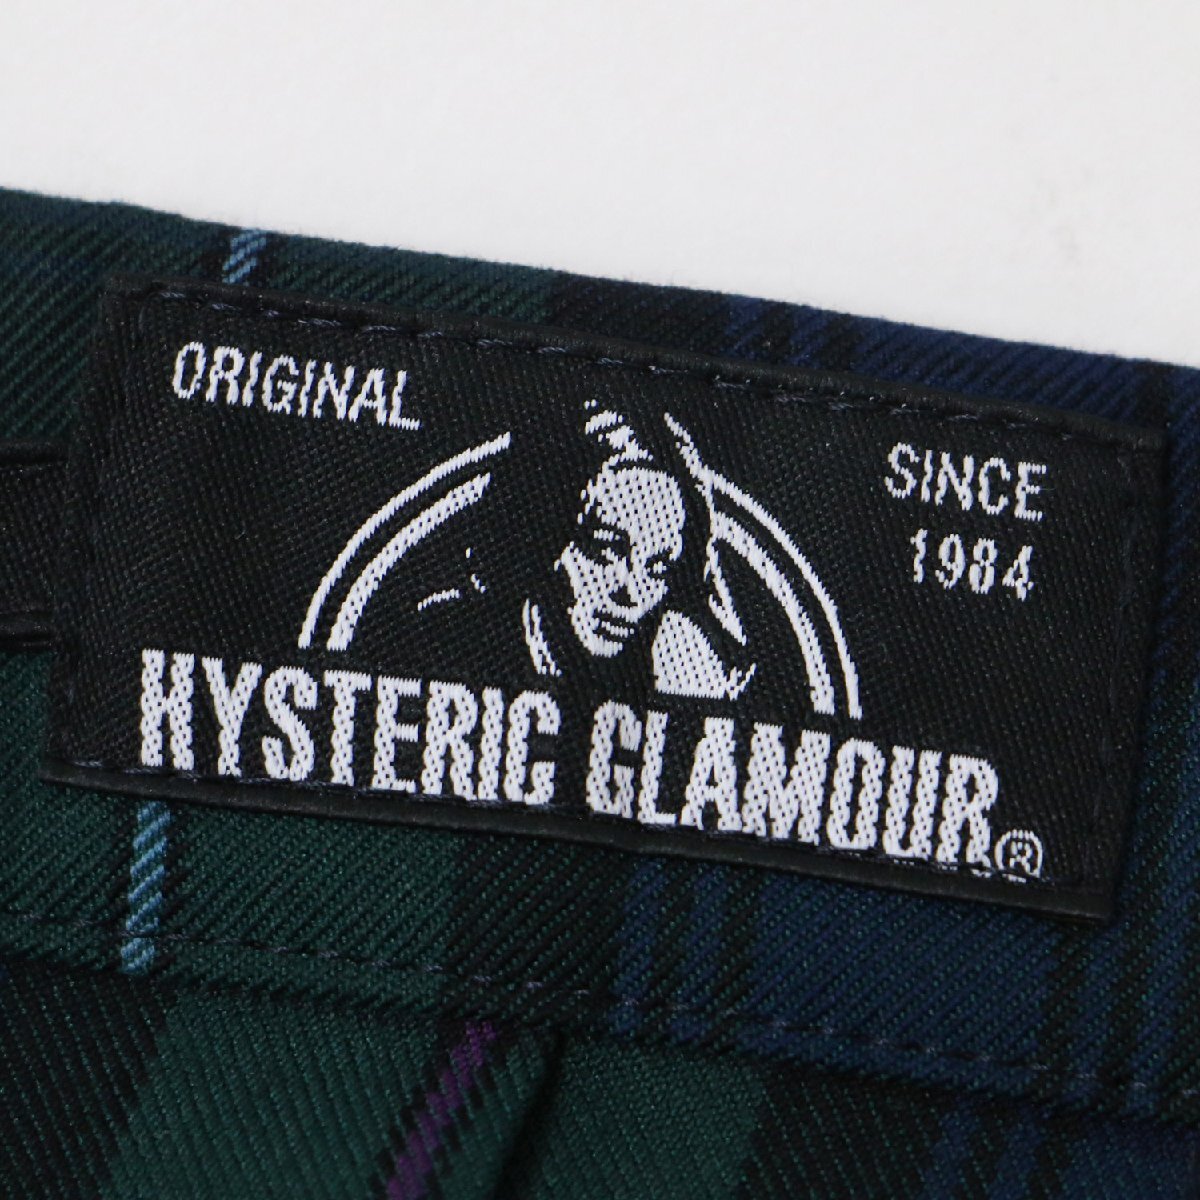  новый товар HYSTERIC GLAMOUR Hysteric Glamour юбка плиссировать зеленый M midi длина боковой ремень заклепки проверка низ 